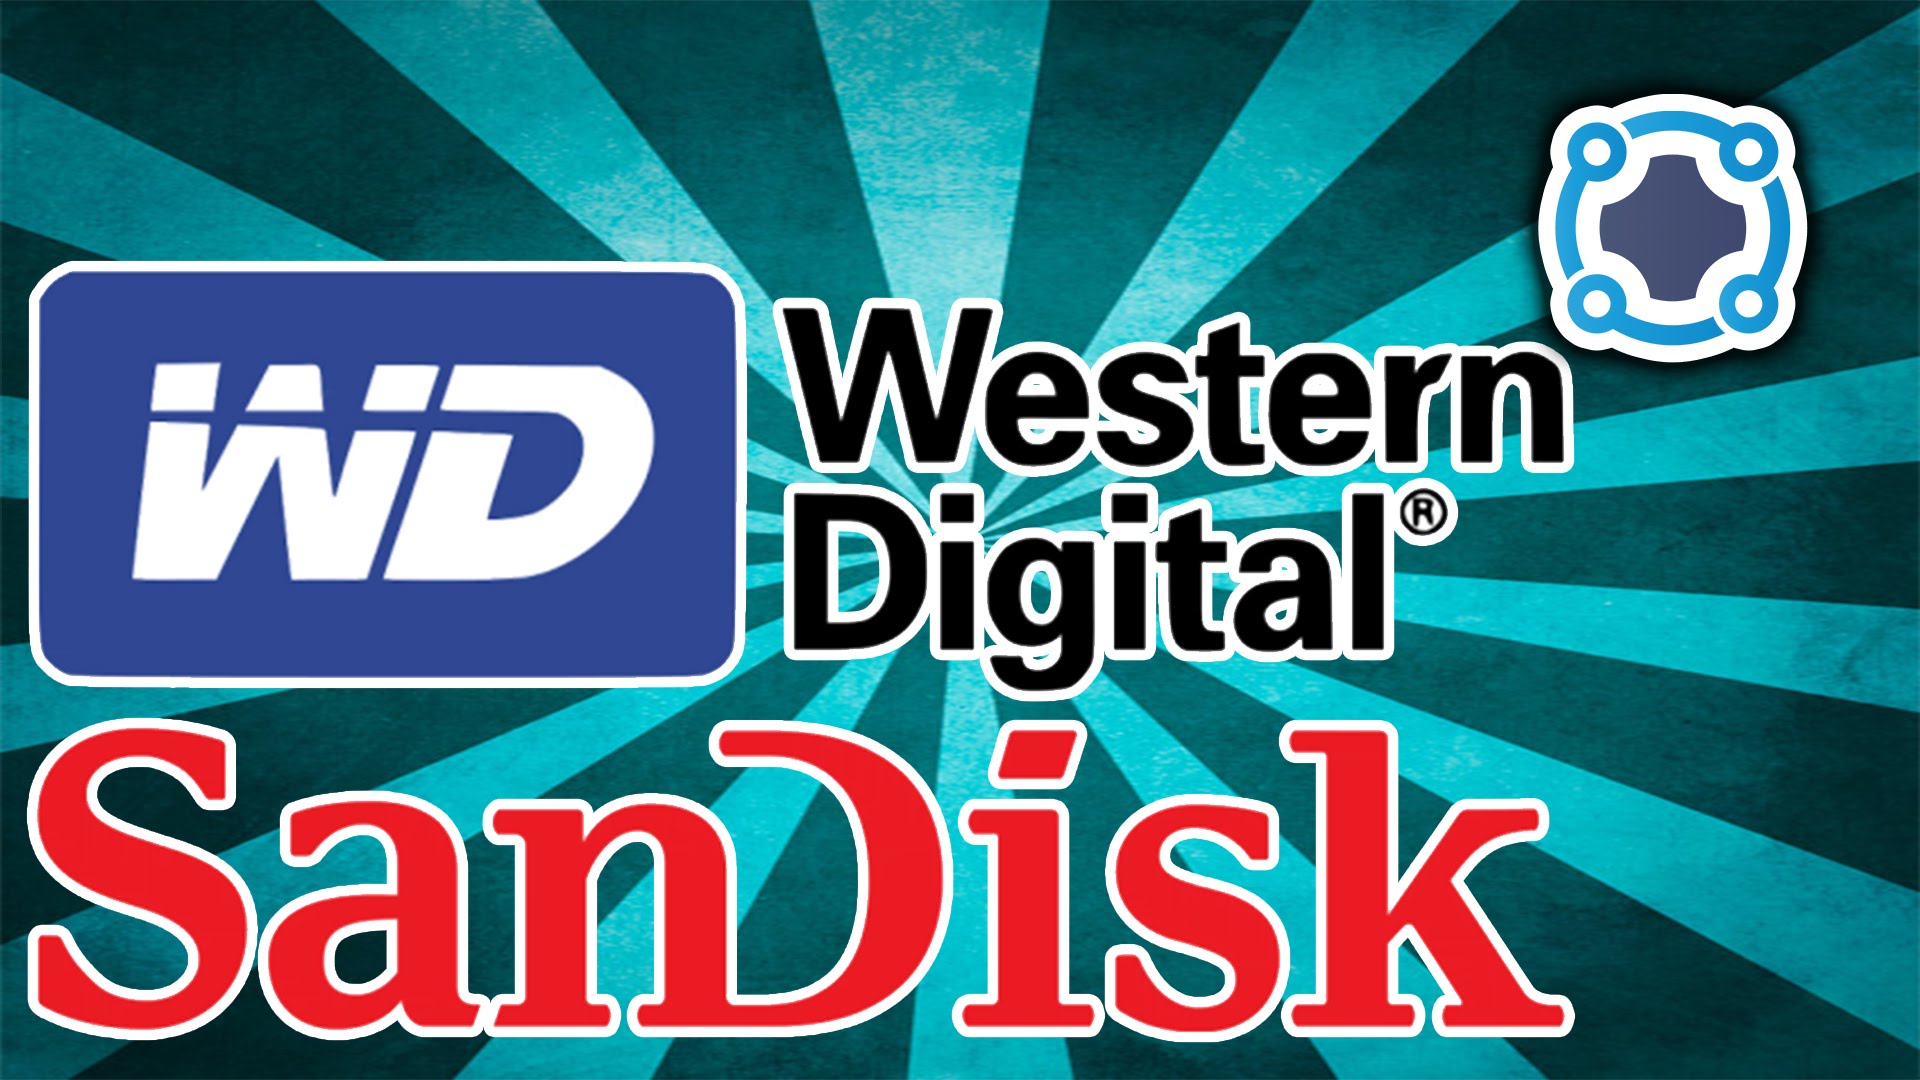 Western Digital Buys SanDisk for $19 BILLION